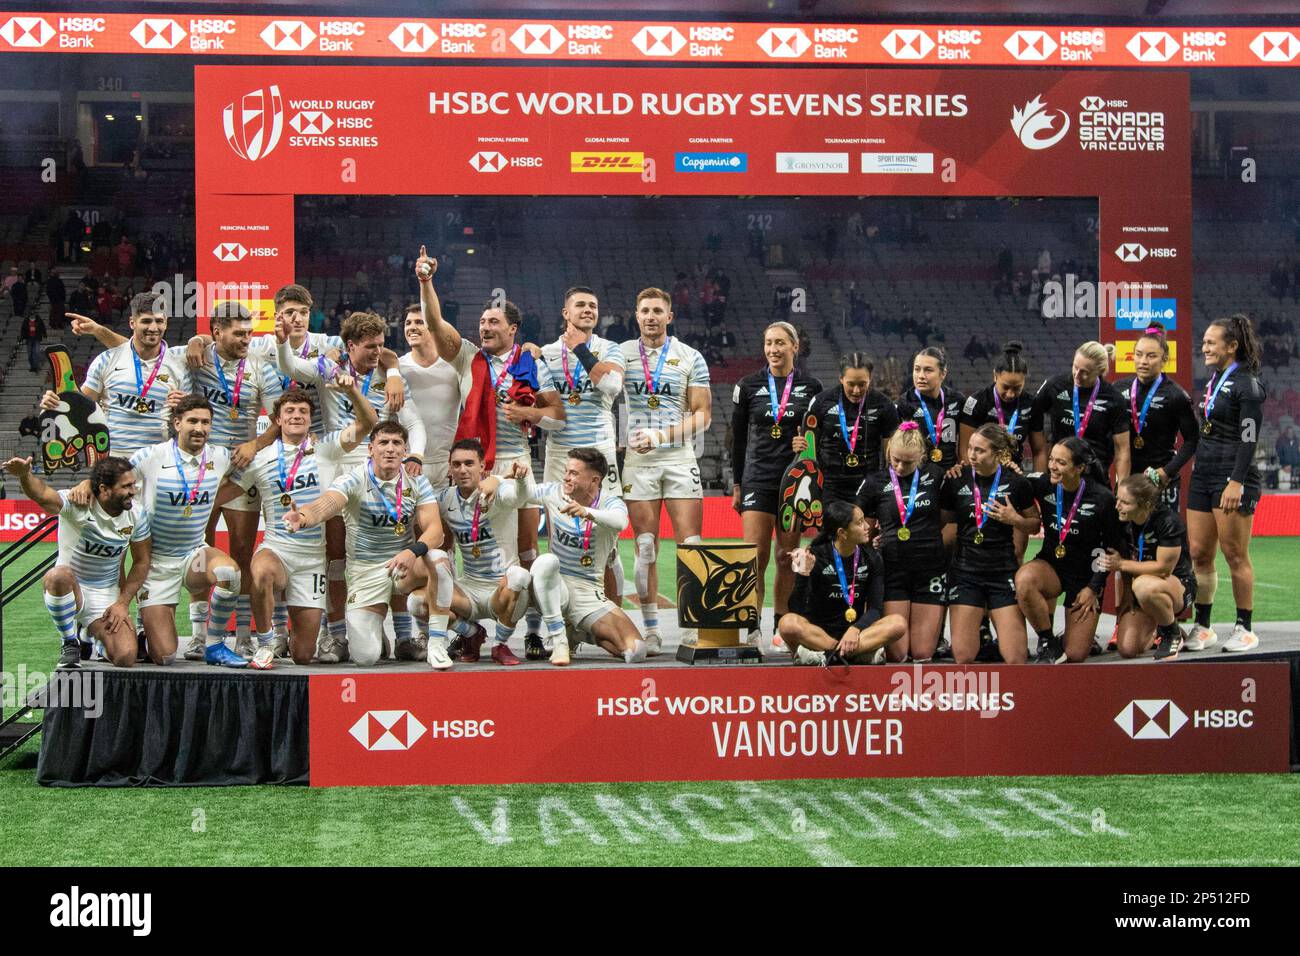 VANCOUVER, CANADA - 05 MARZO: Gli uomini argentini e le donne neozelandesi festeggiano dopo aver vinto la medaglia d'oro durante la HSBC World Rugby Sevens Series 2023 al BC Place Stadium di Vancouver, Canada. (Foto di Tomaz Jr/PxImages) Foto Stock